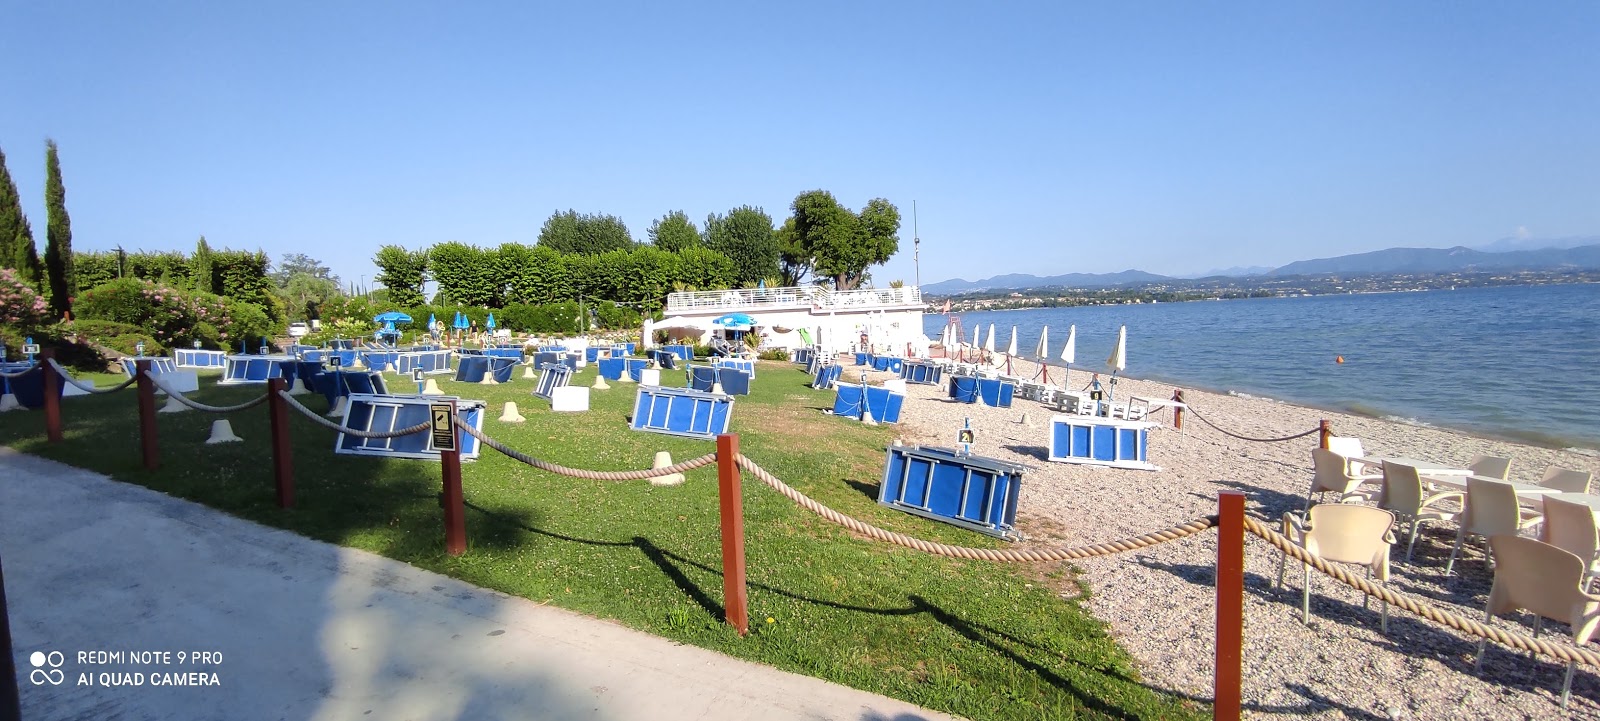 Photo of Spiaggia Cala de Or with spacious shore